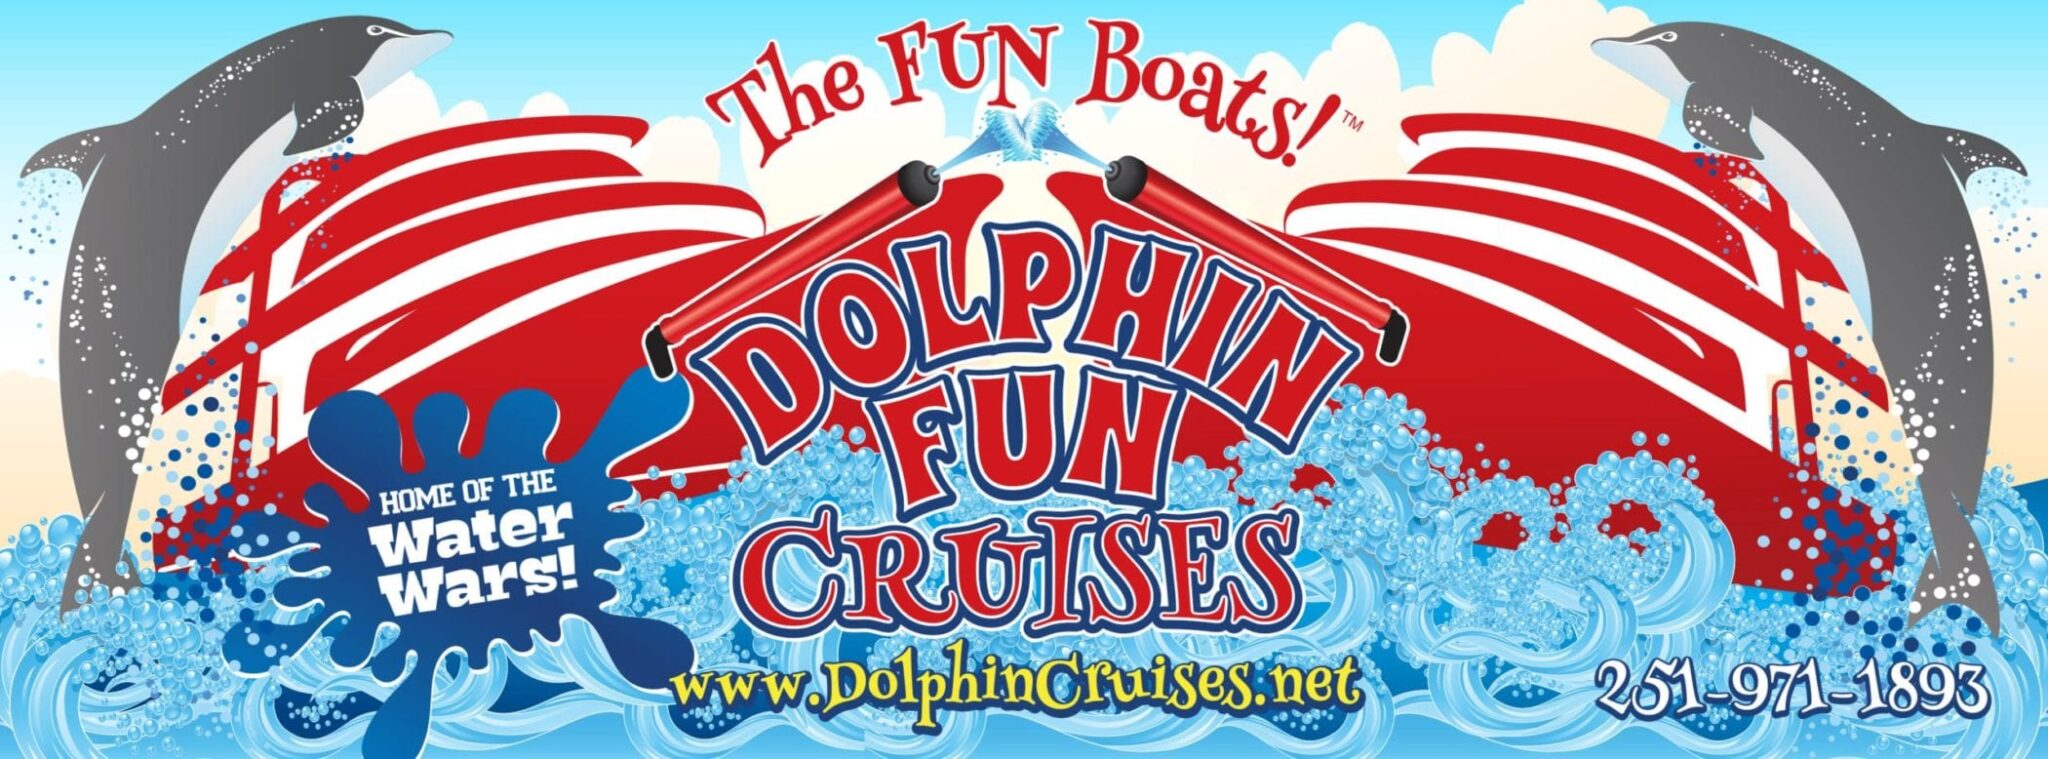 fun boat dolphin cruise